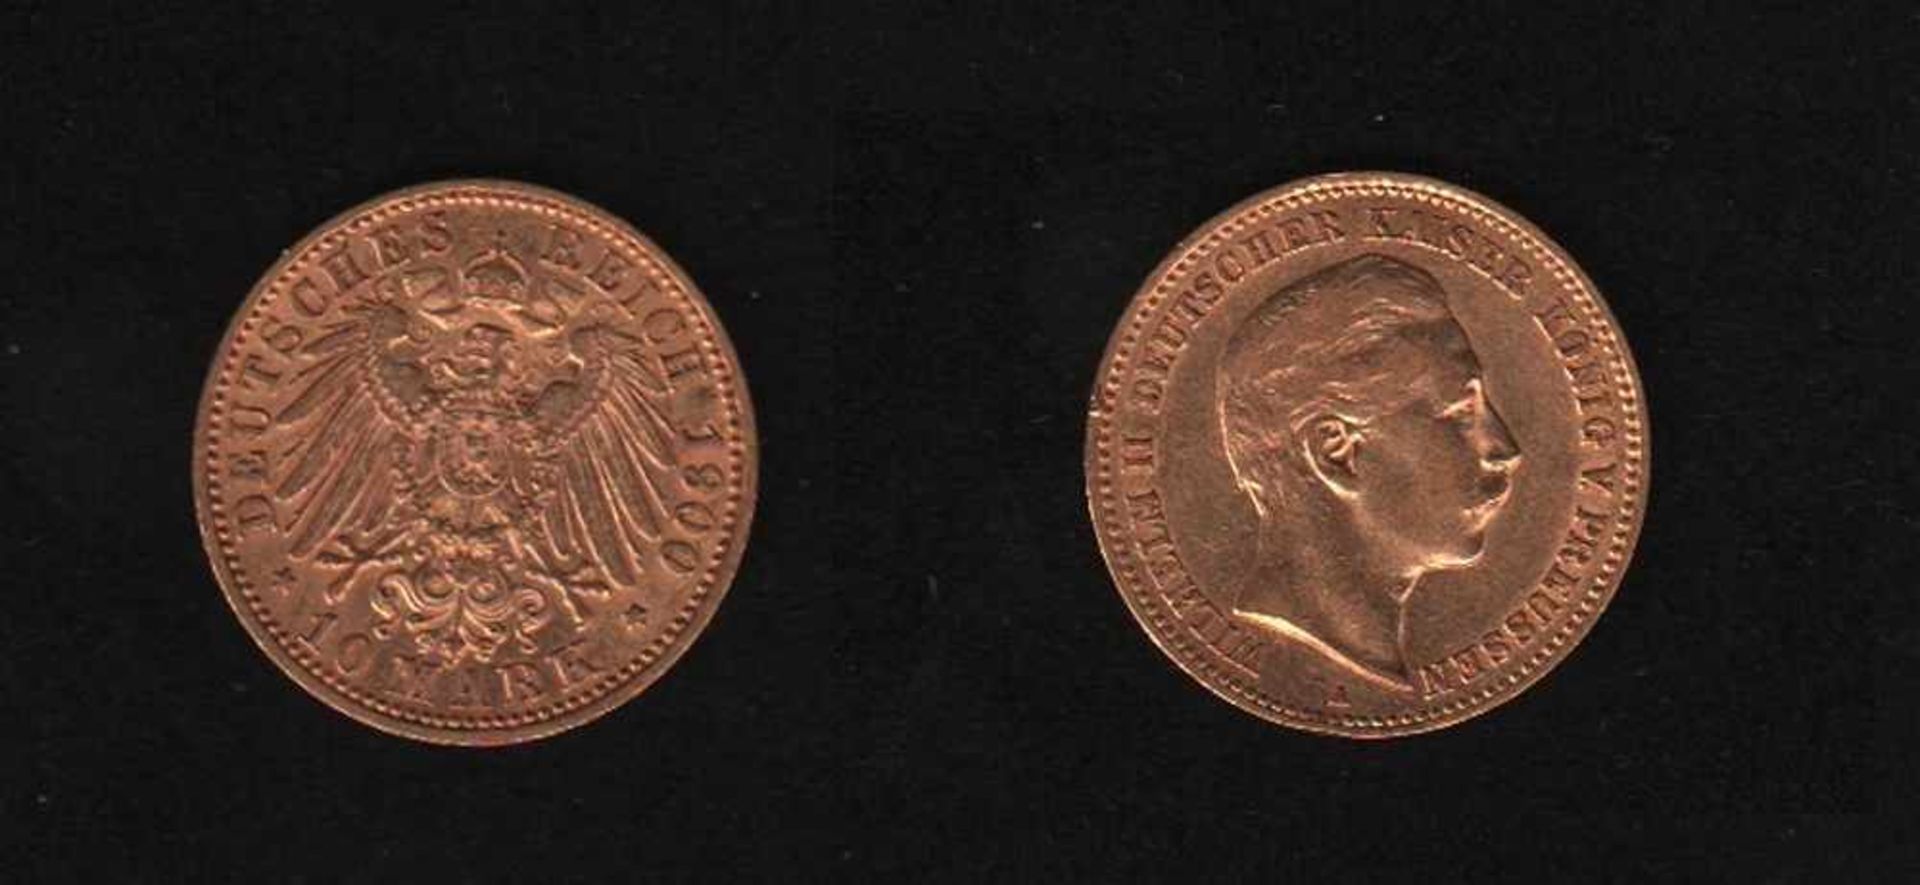 Deutsches Reich. Goldmünze.10 Mark. Wilhelm II., Deutscher Kaiser. A 1900. Vorderseite: Porträt